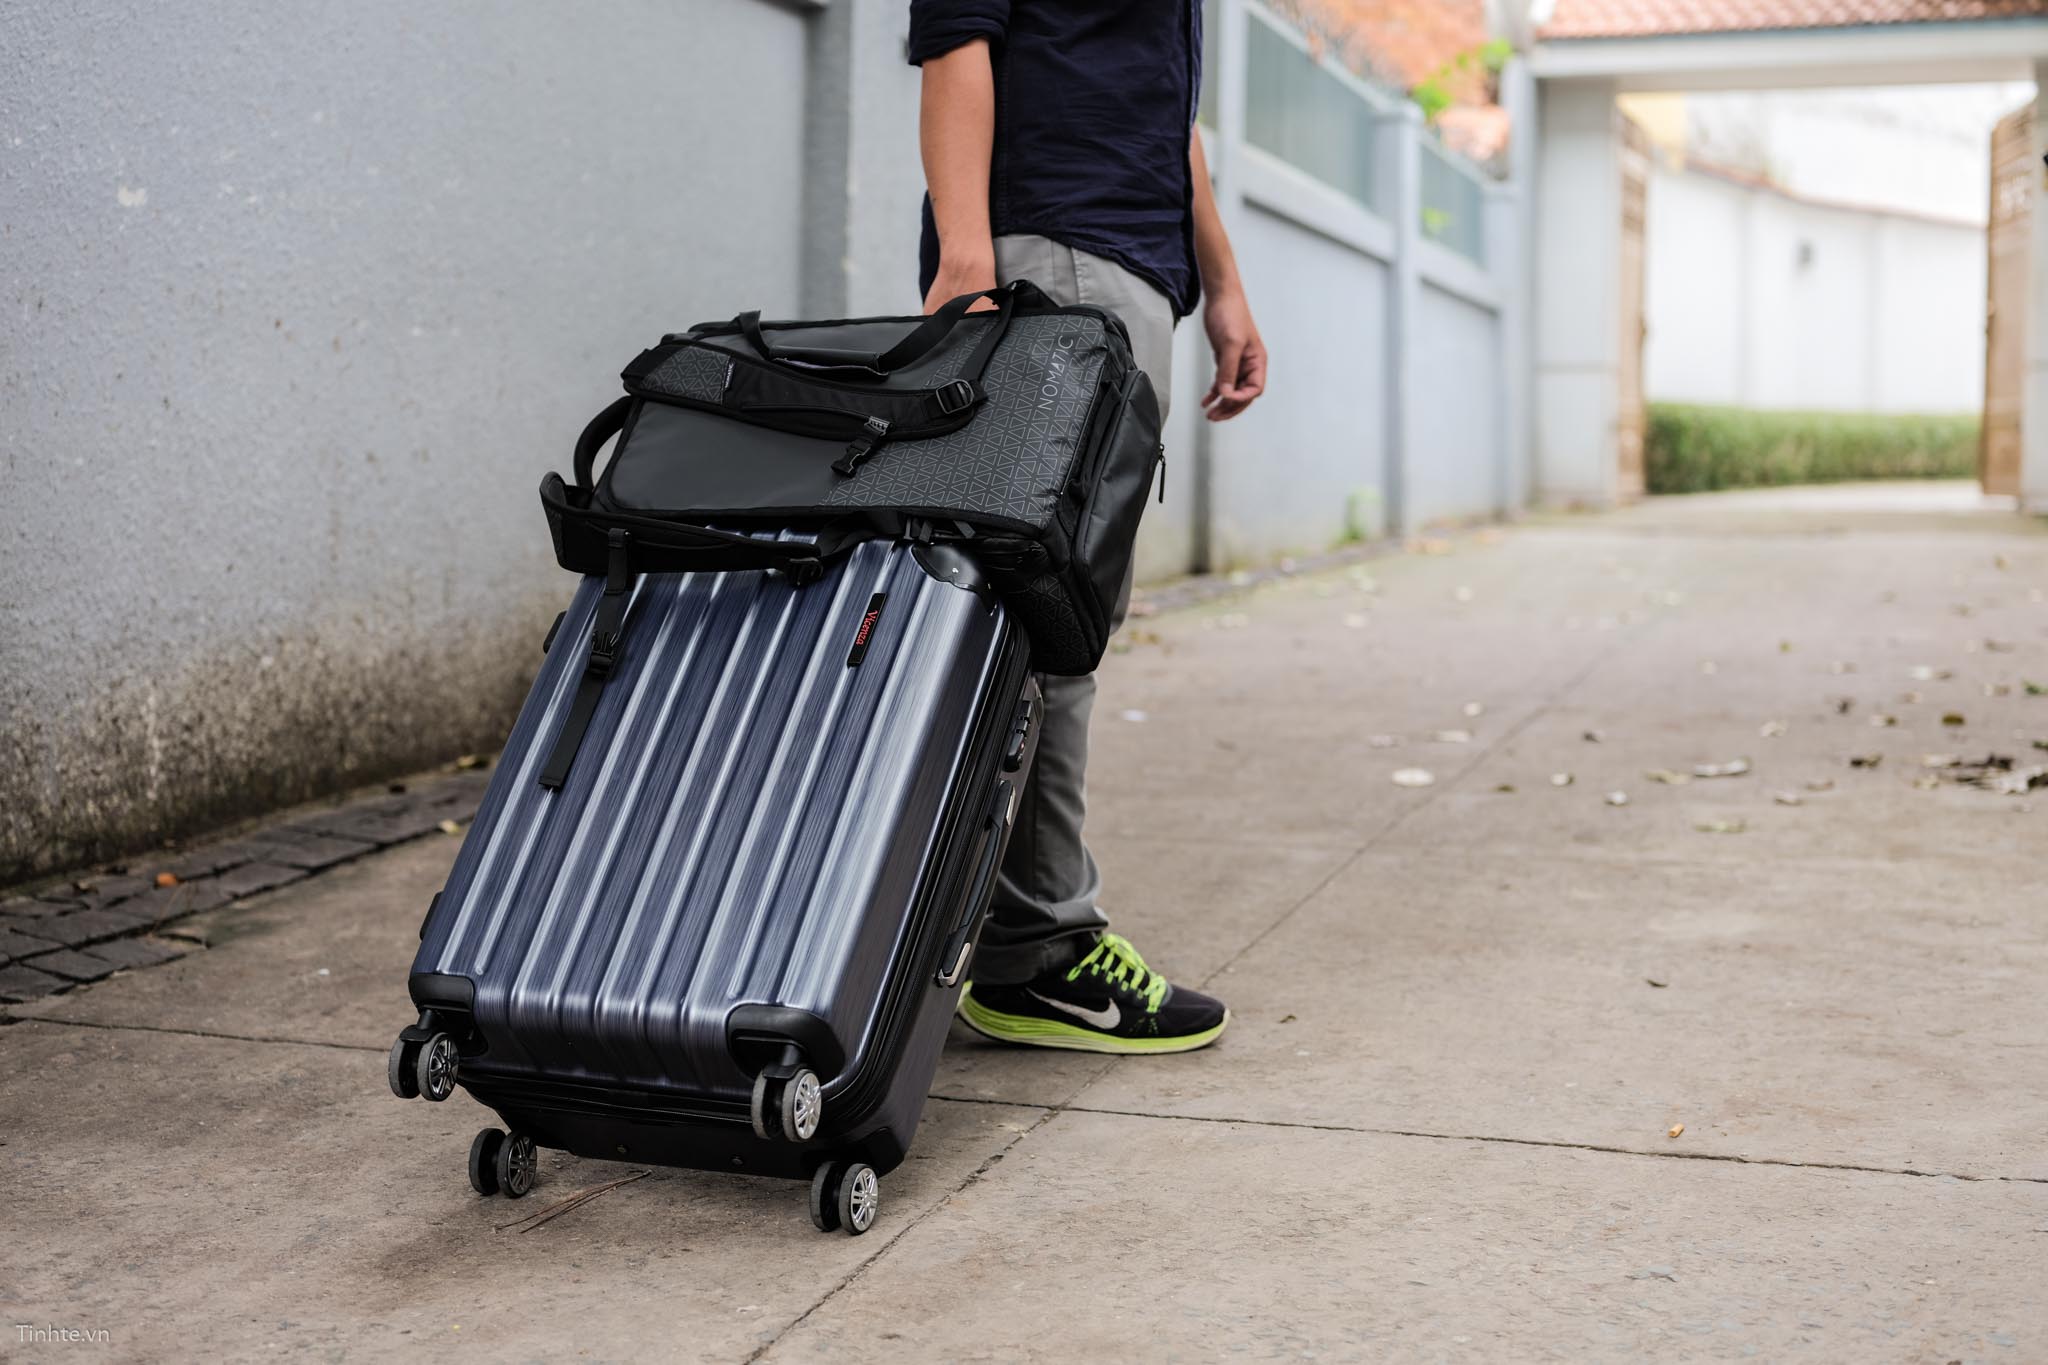 Chọn vali cho chuyến du lịch sắp tới là một công việc quan trọng để đảm bảo số lượng đồ đạc mang theo tiện lợi, gọn gàng và an toàn. Xem những mẫu vali được thiết kế sang trọng và tiện lợi để lựa chọn sản phẩm phù hợp cho chuyến hành trình sắp tới.